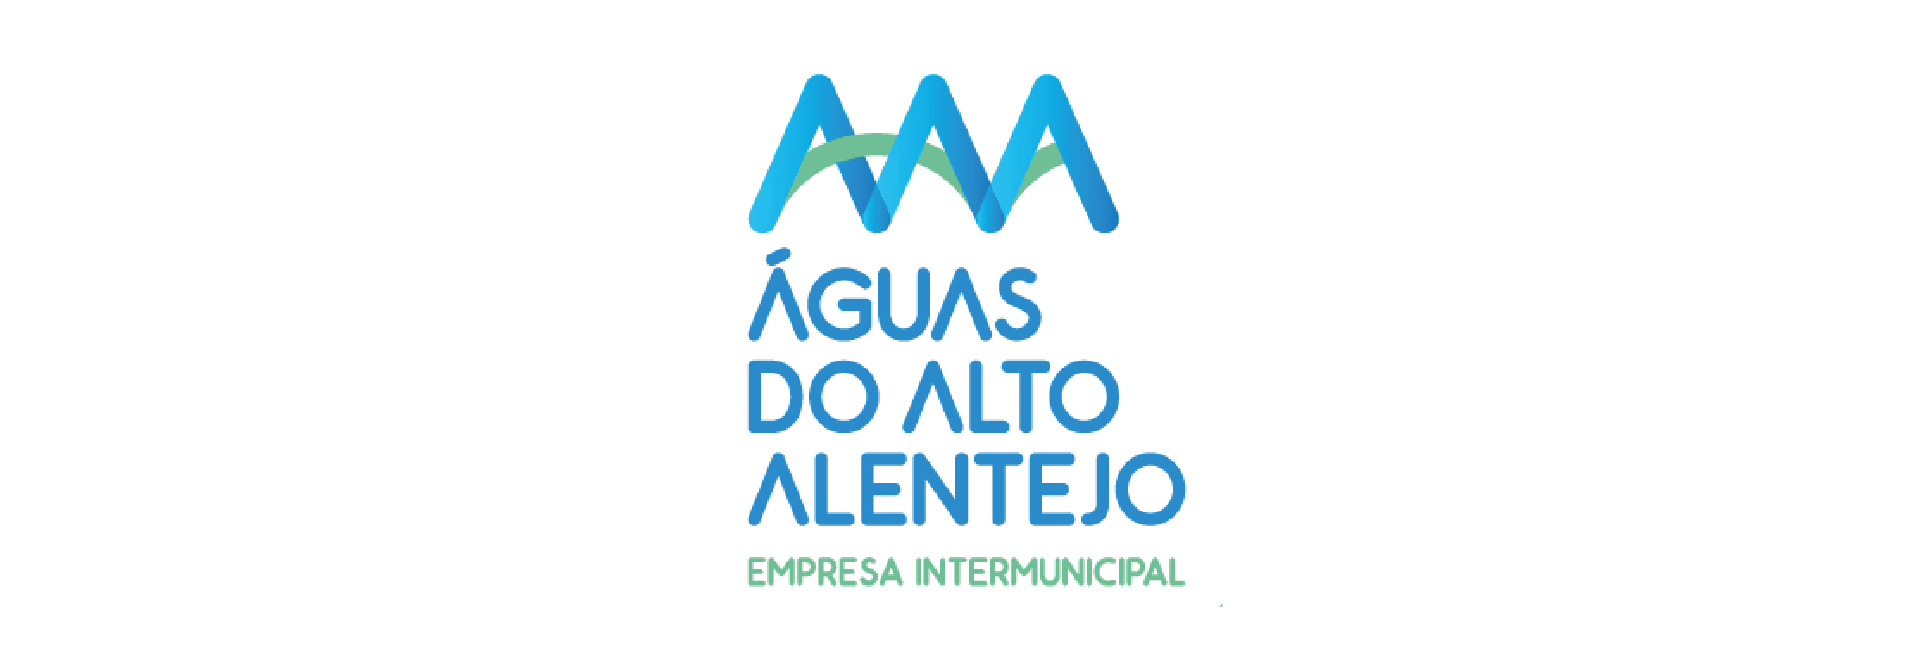 (Português) Águas do Alto Alentejo está a recrutar!